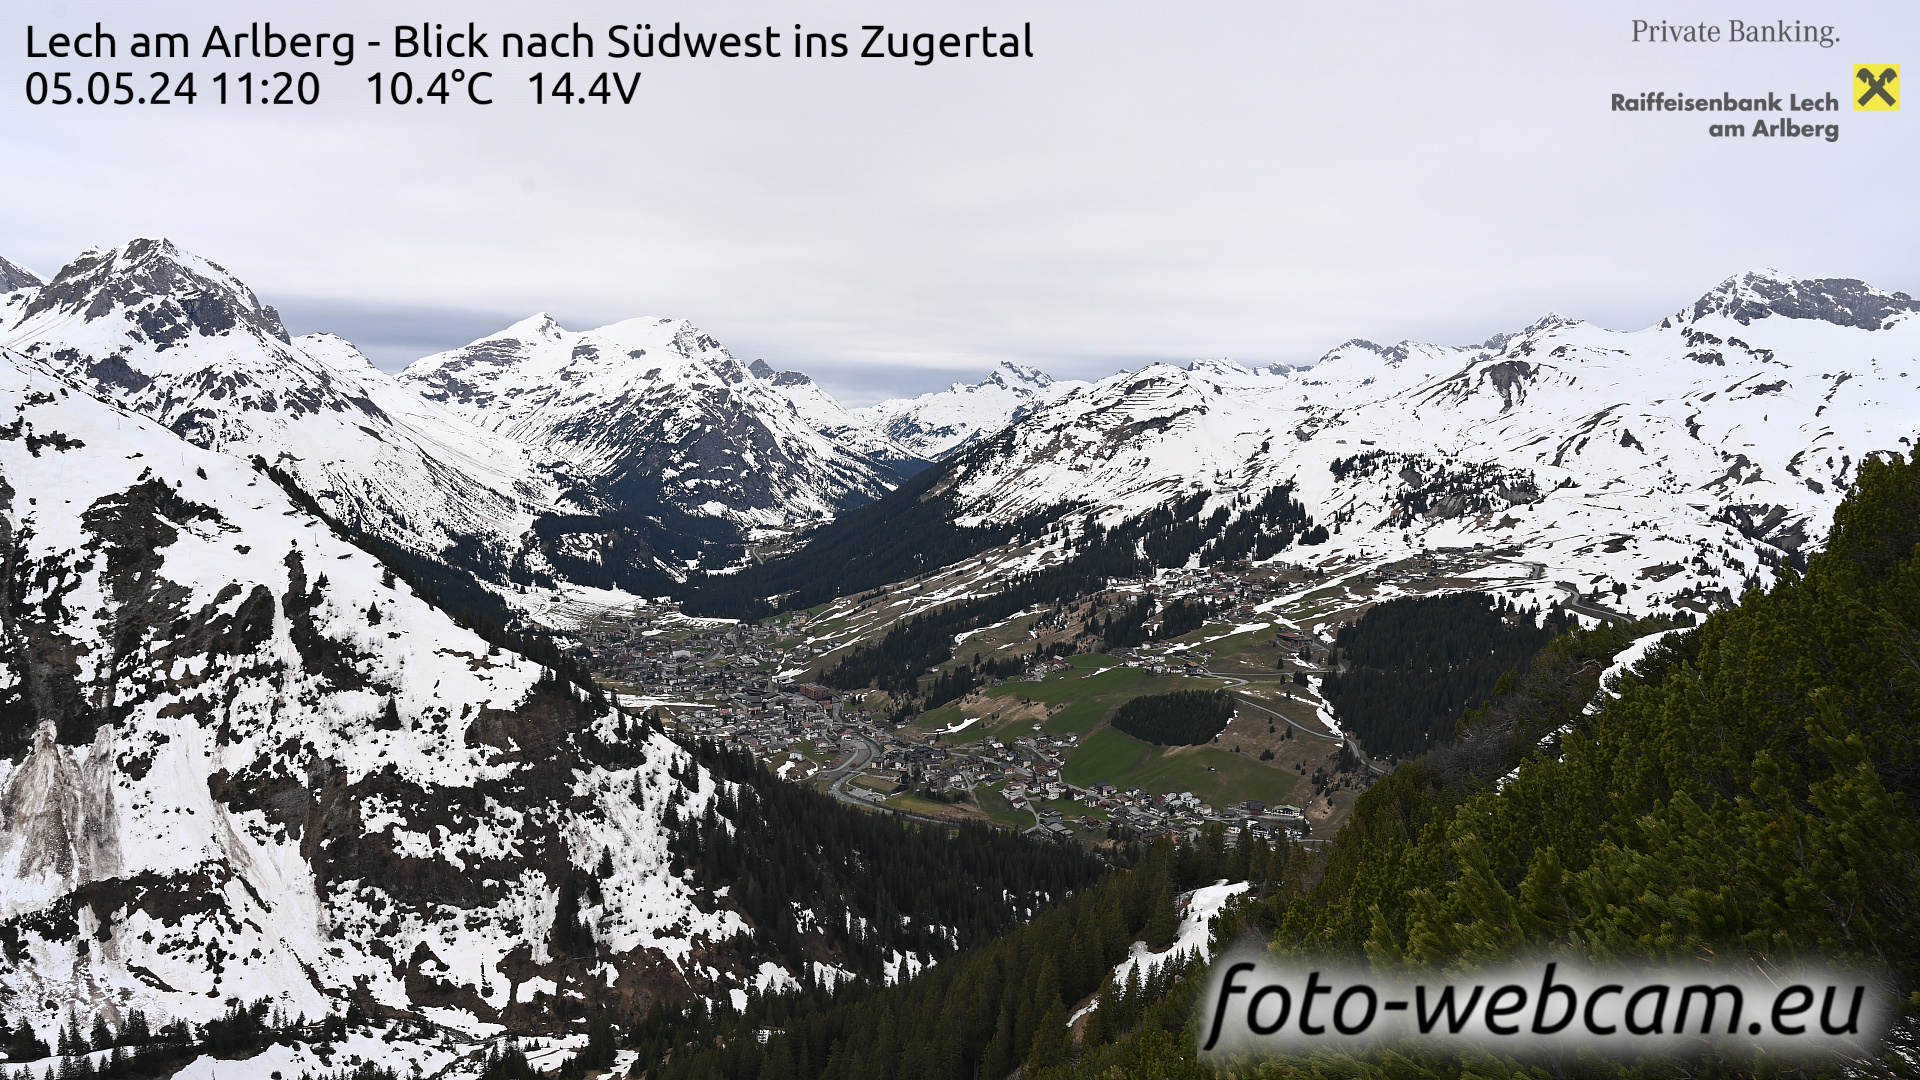 Lech am Arlberg Tue. 11:31